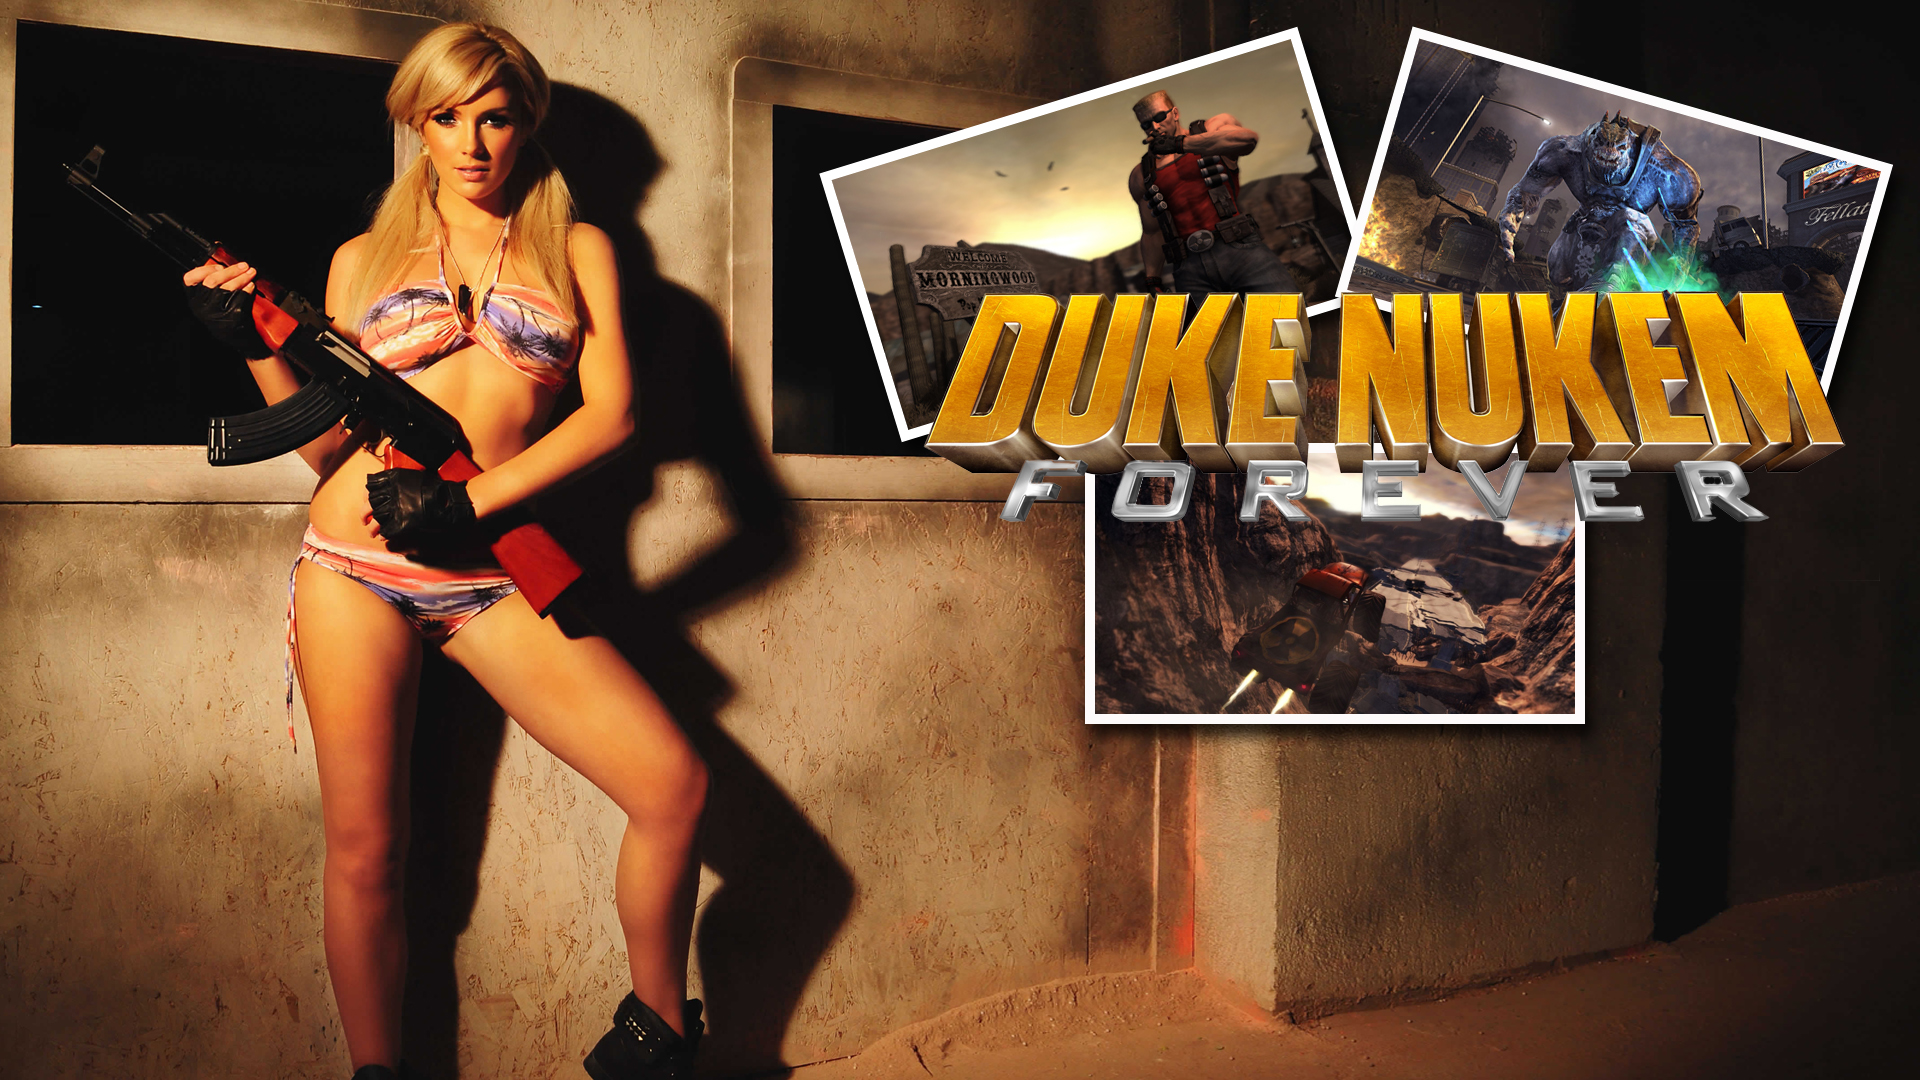 Duke Nukem Forever High Quality Background on Wallpapers Vista